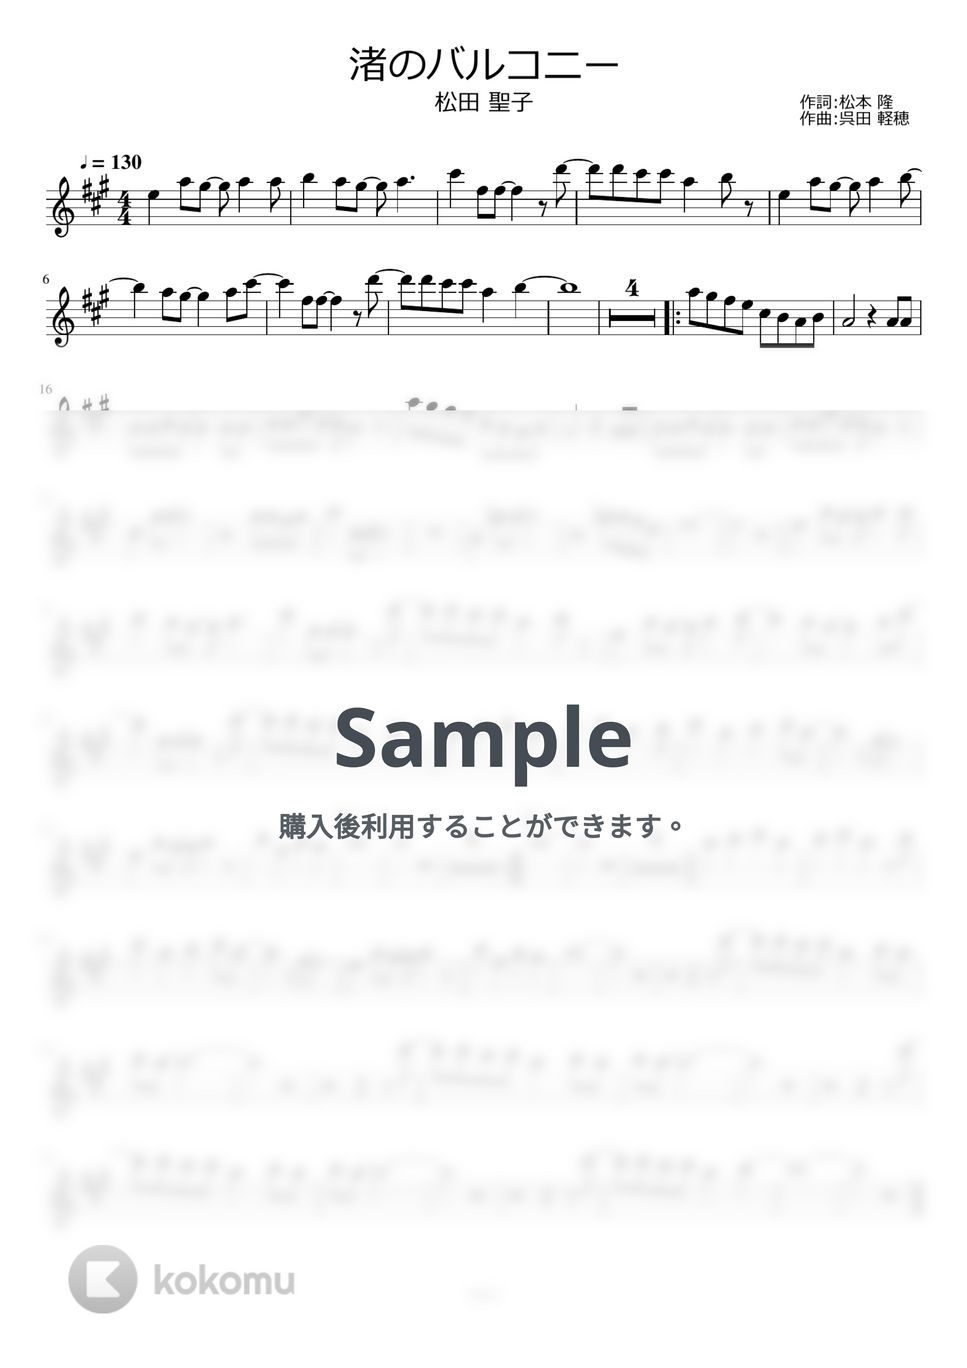 松田聖子 - 渚のバルコニー by ayako music school